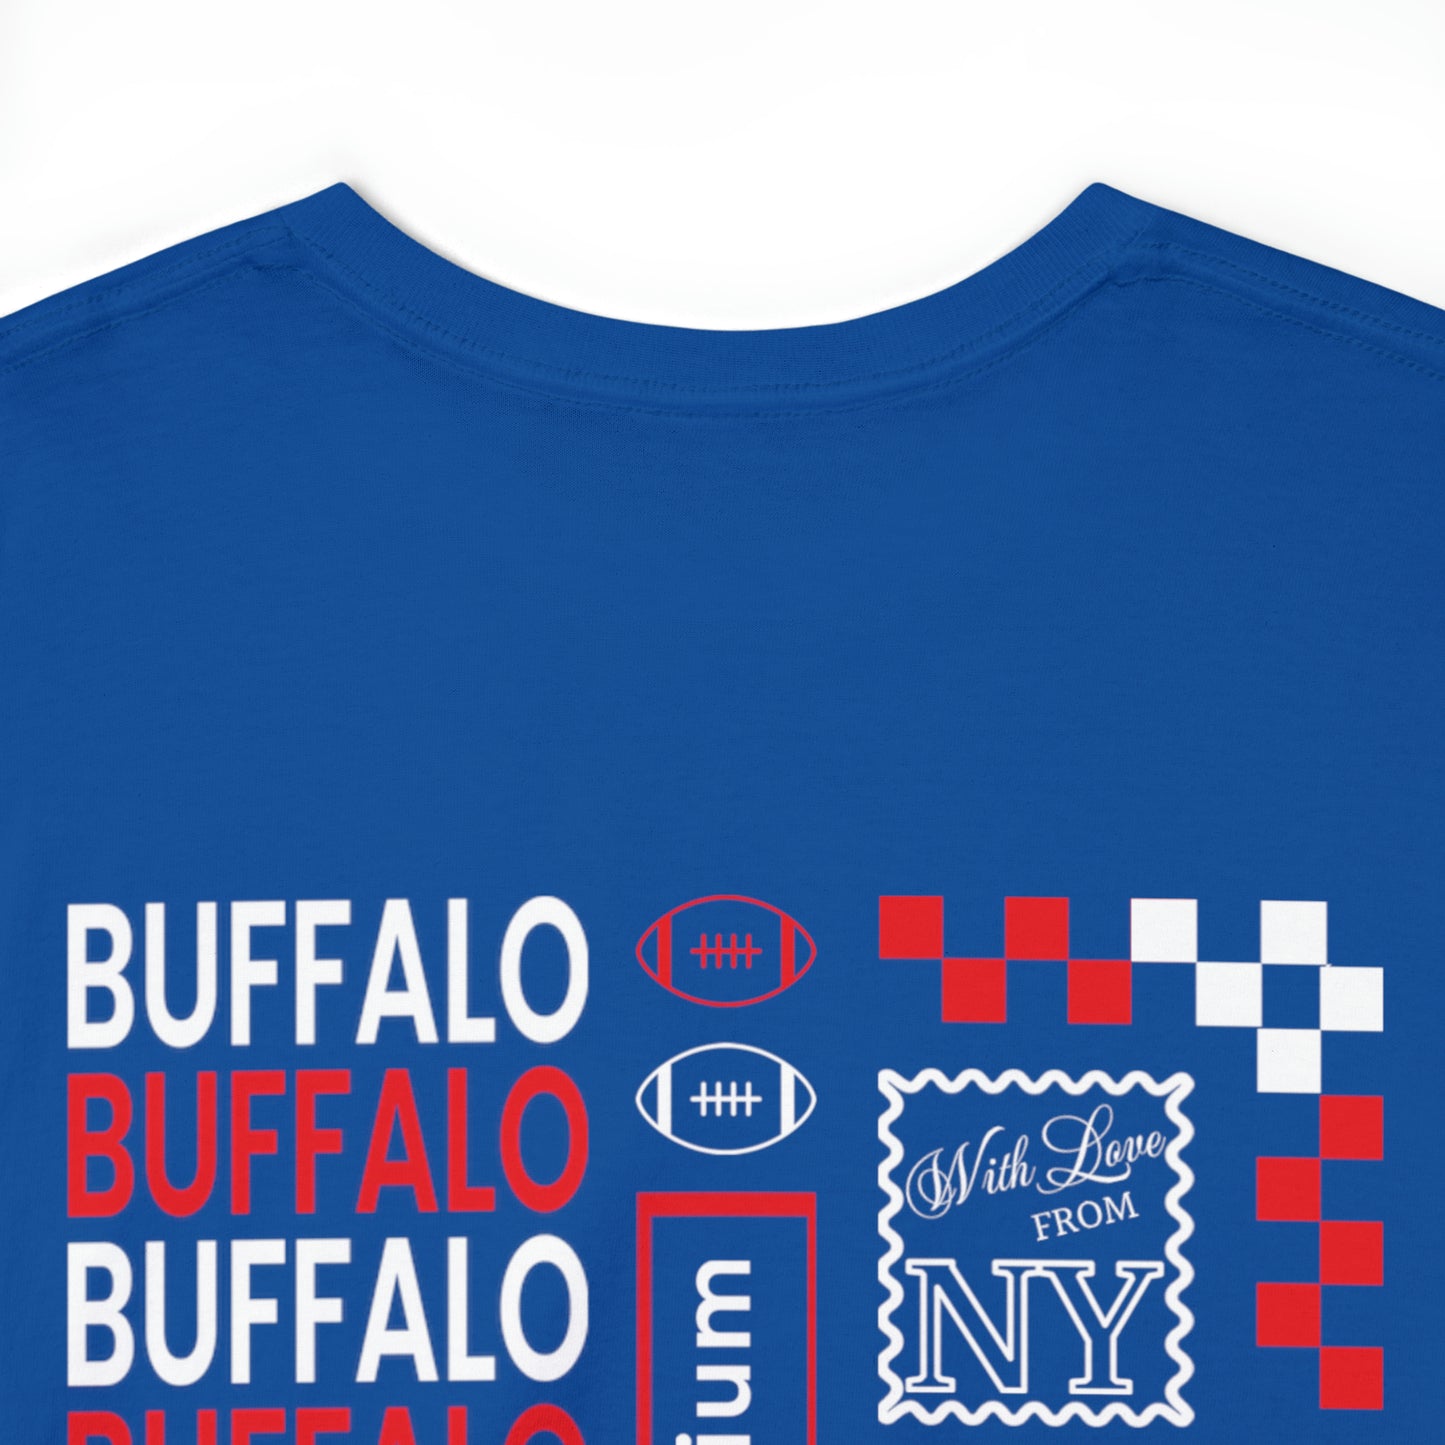 Buffalo Bills Football Tshirt